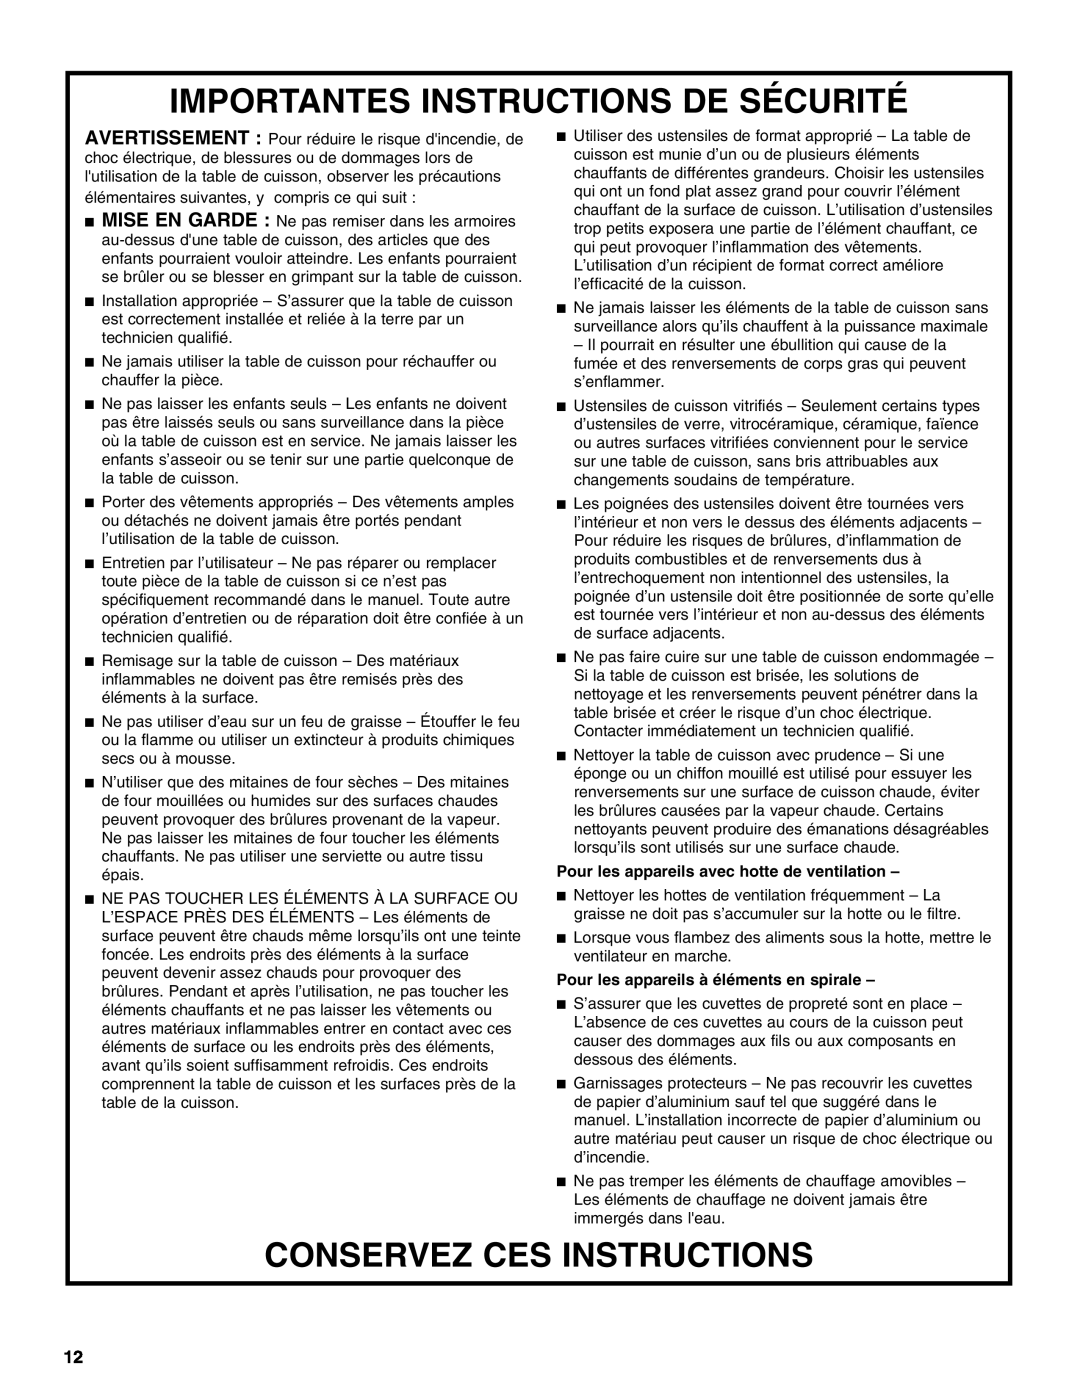 Whirlpool W10162166A manual Importantes Instructions De Sécurité, Conservez Ces Instructions 